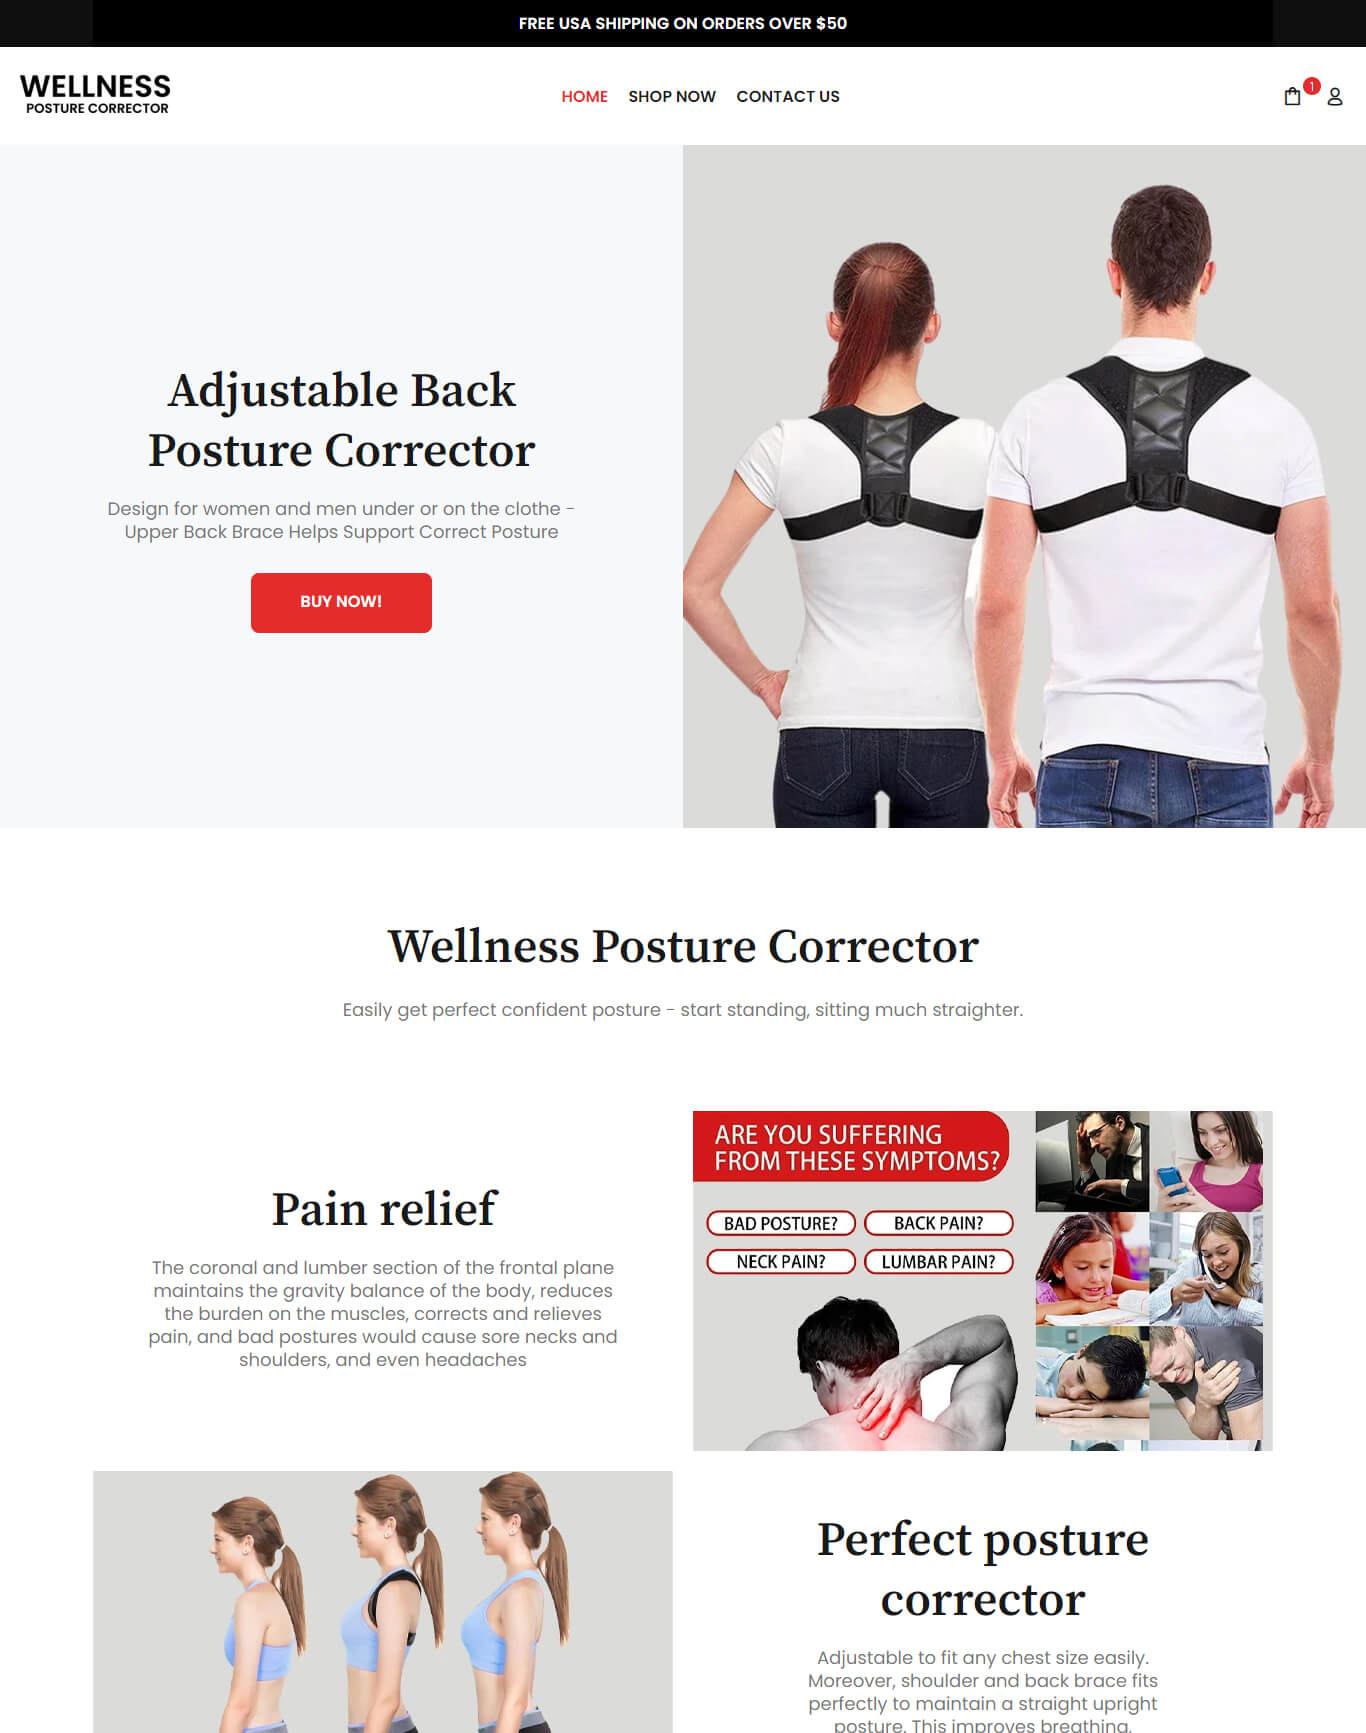 Wellness Posture Corrector